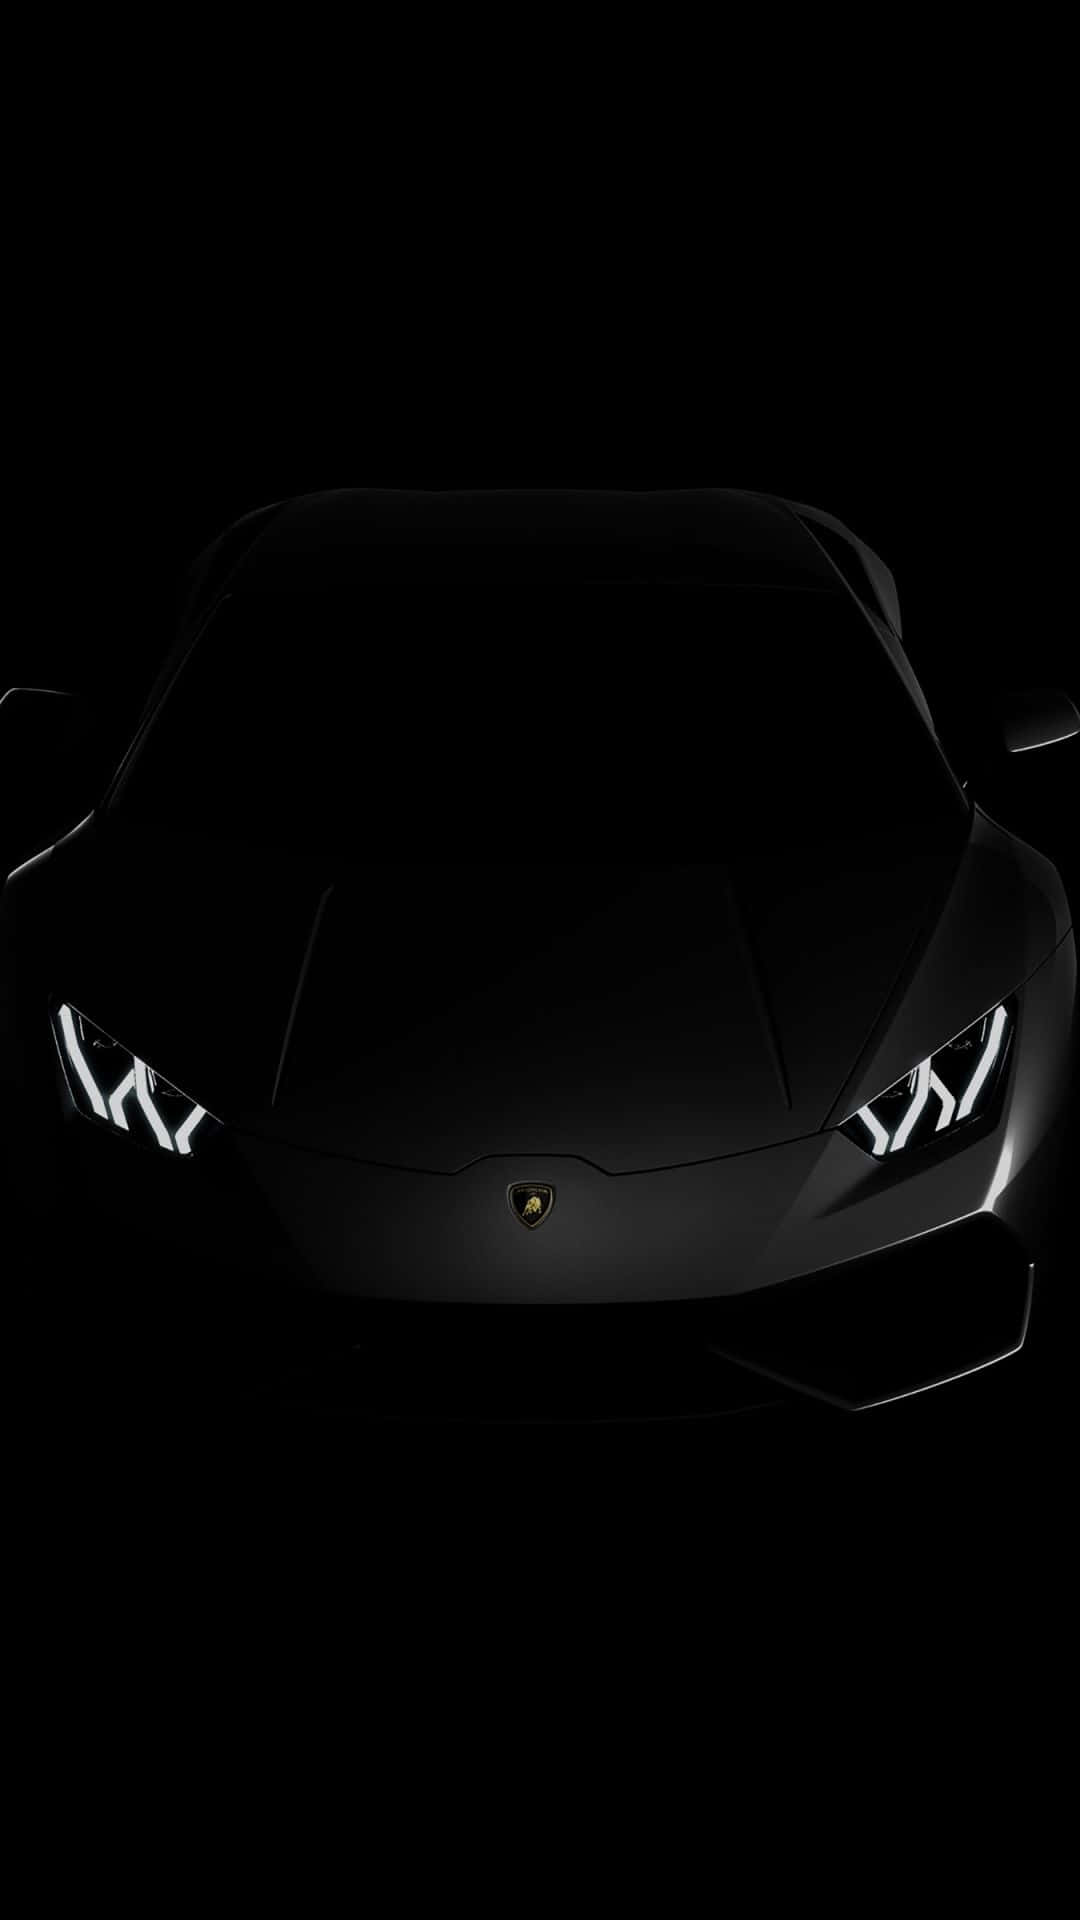 Black Expensive Lamborghini Phone Background